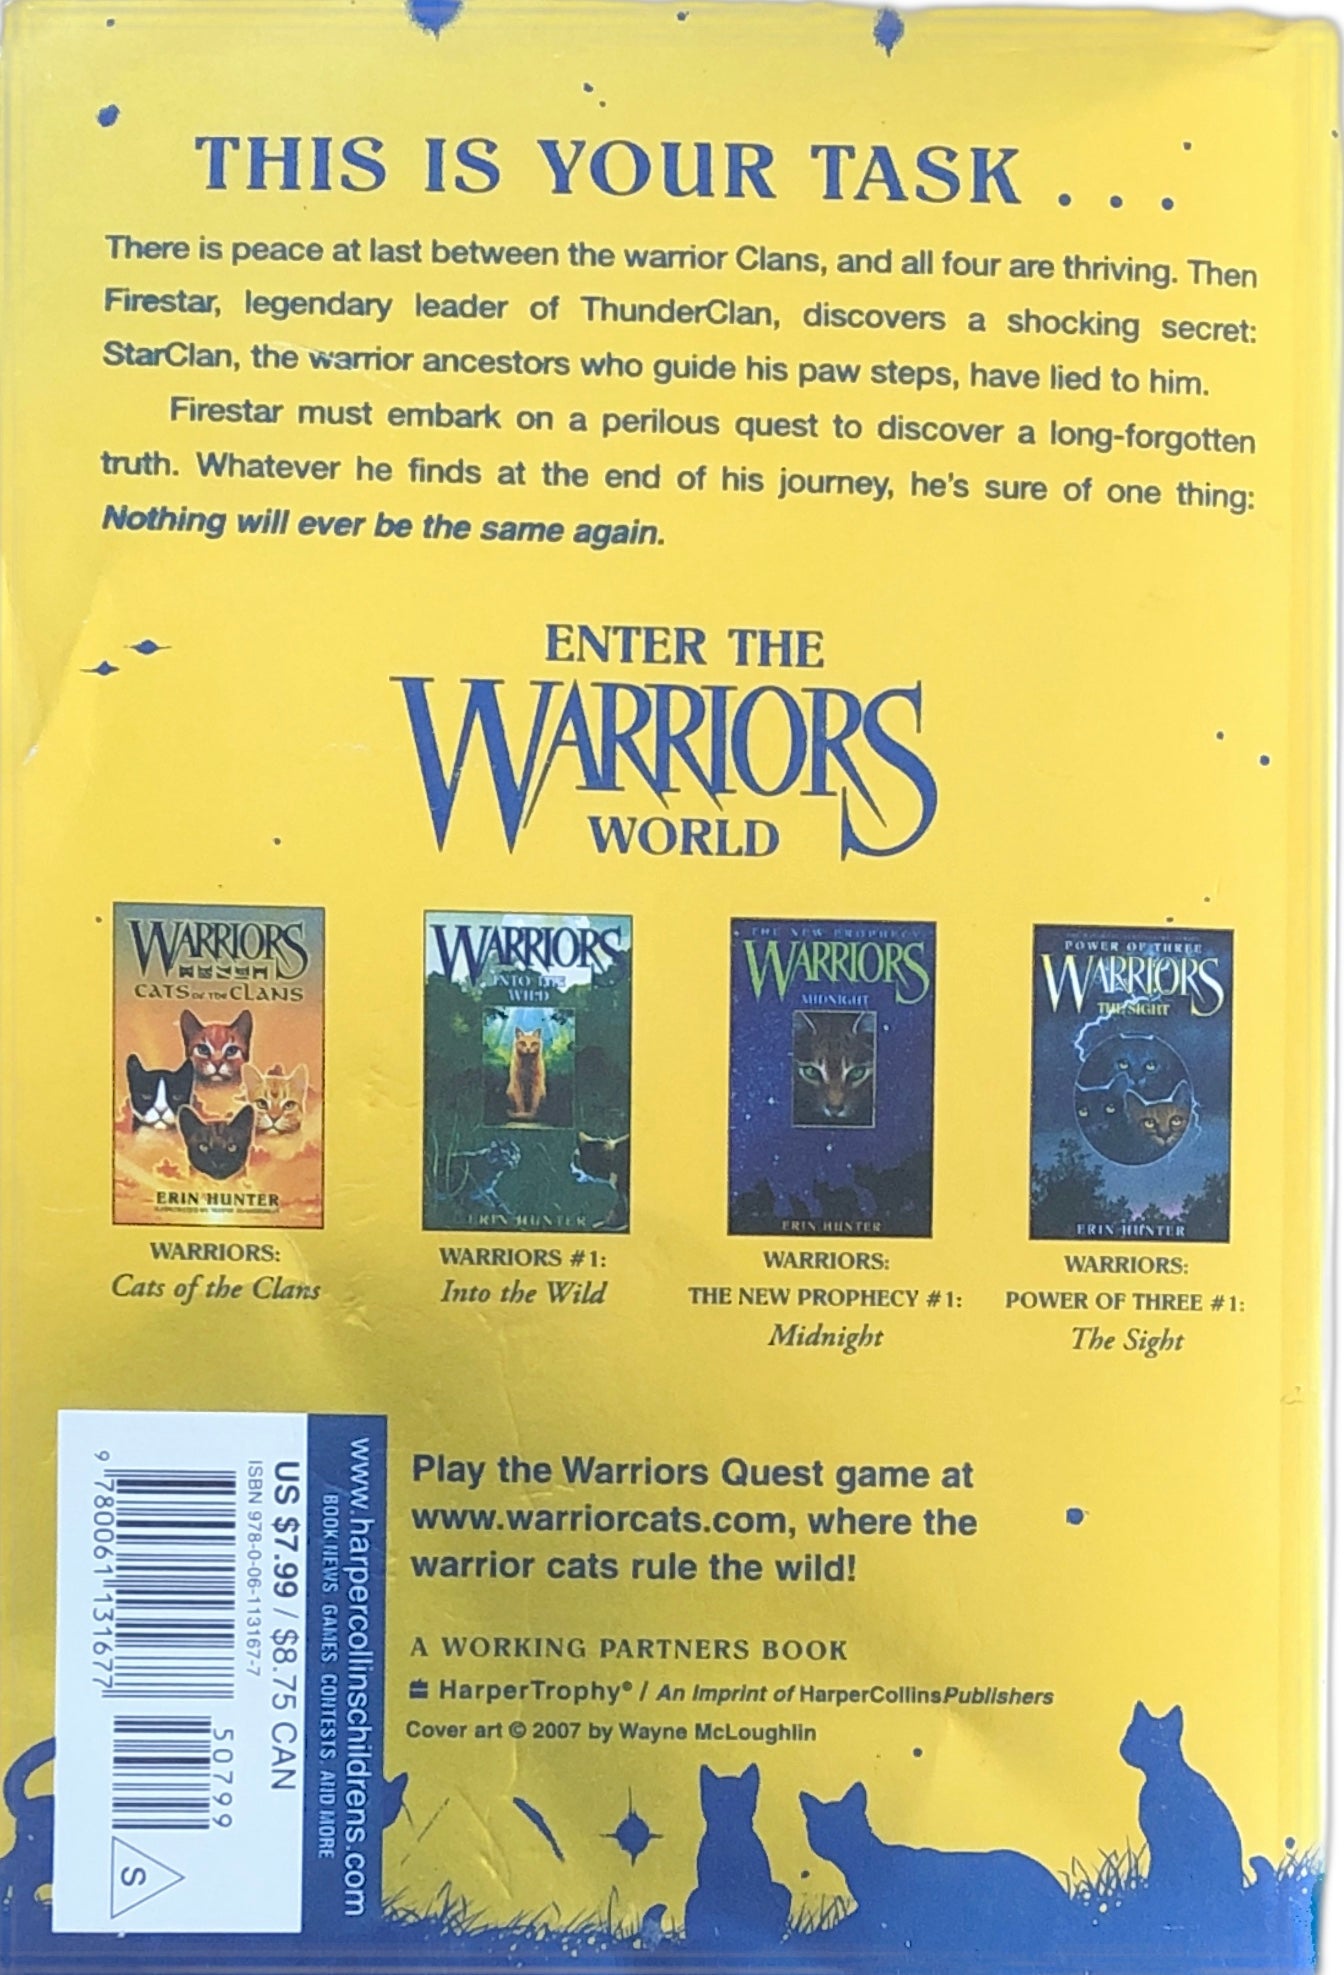 Firestar's Quest (Warriors Super Edition) by Hunter, Erin